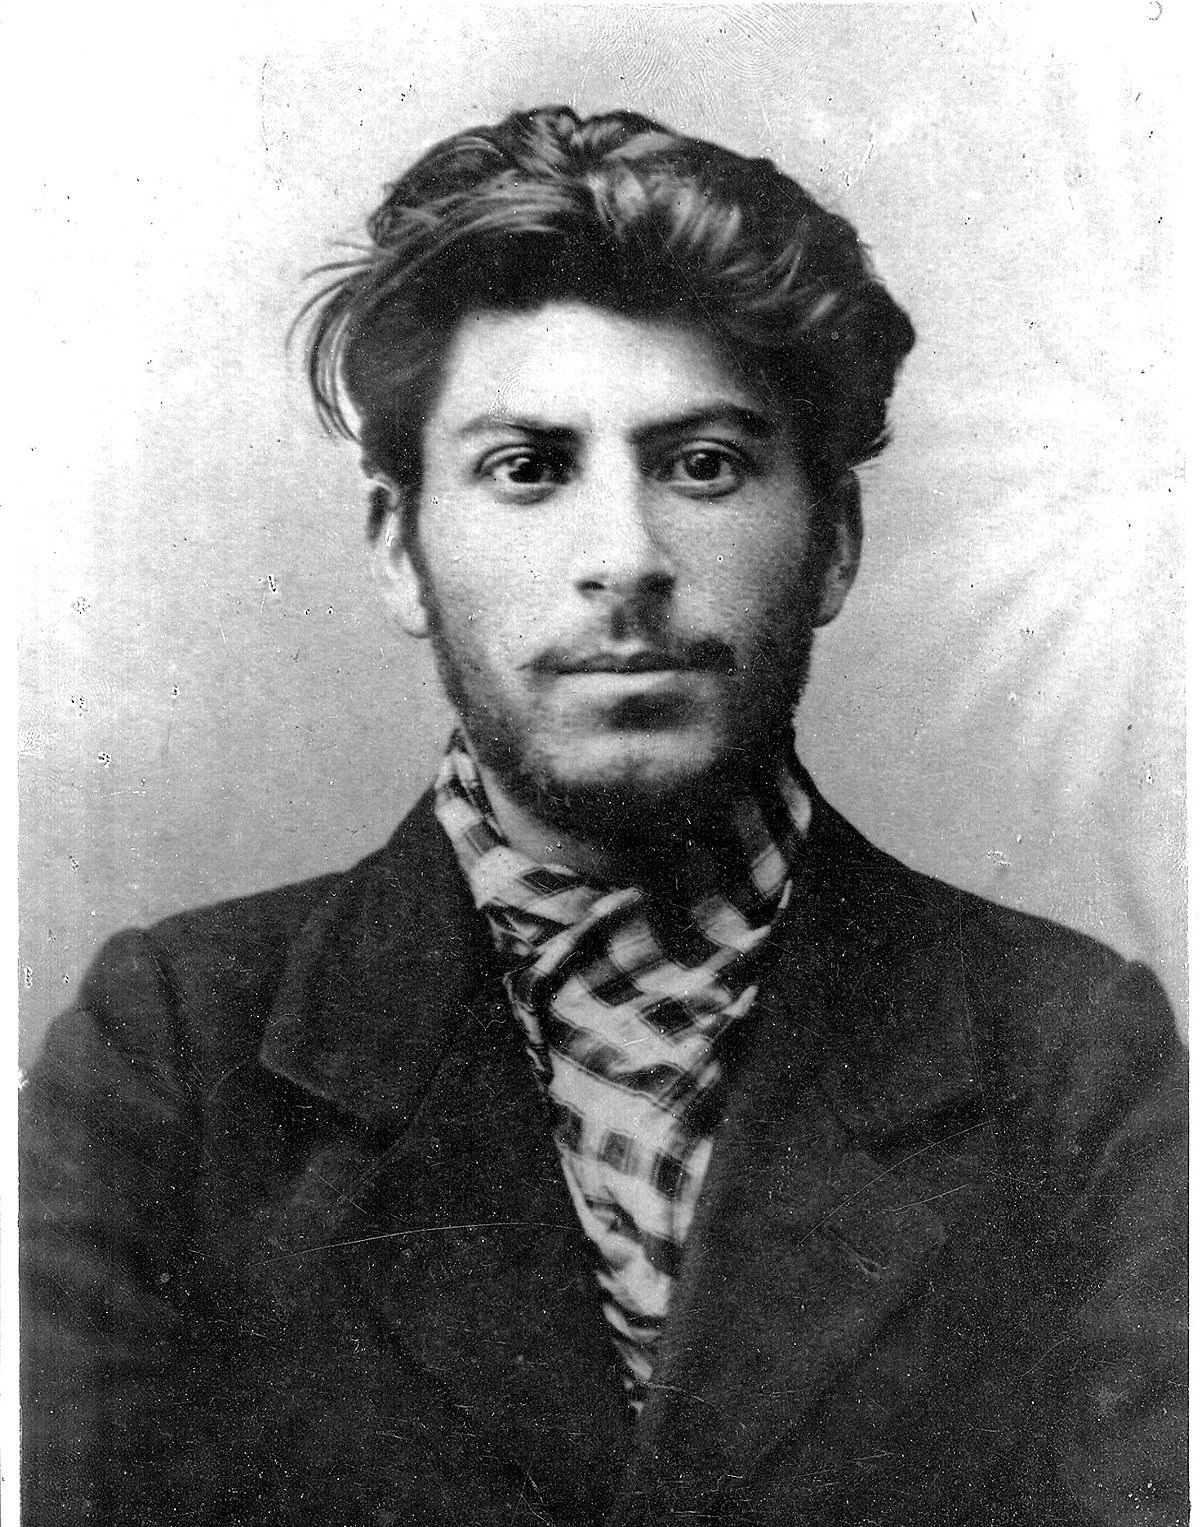 Stalin da giovane, in una foto scattata nel 1902